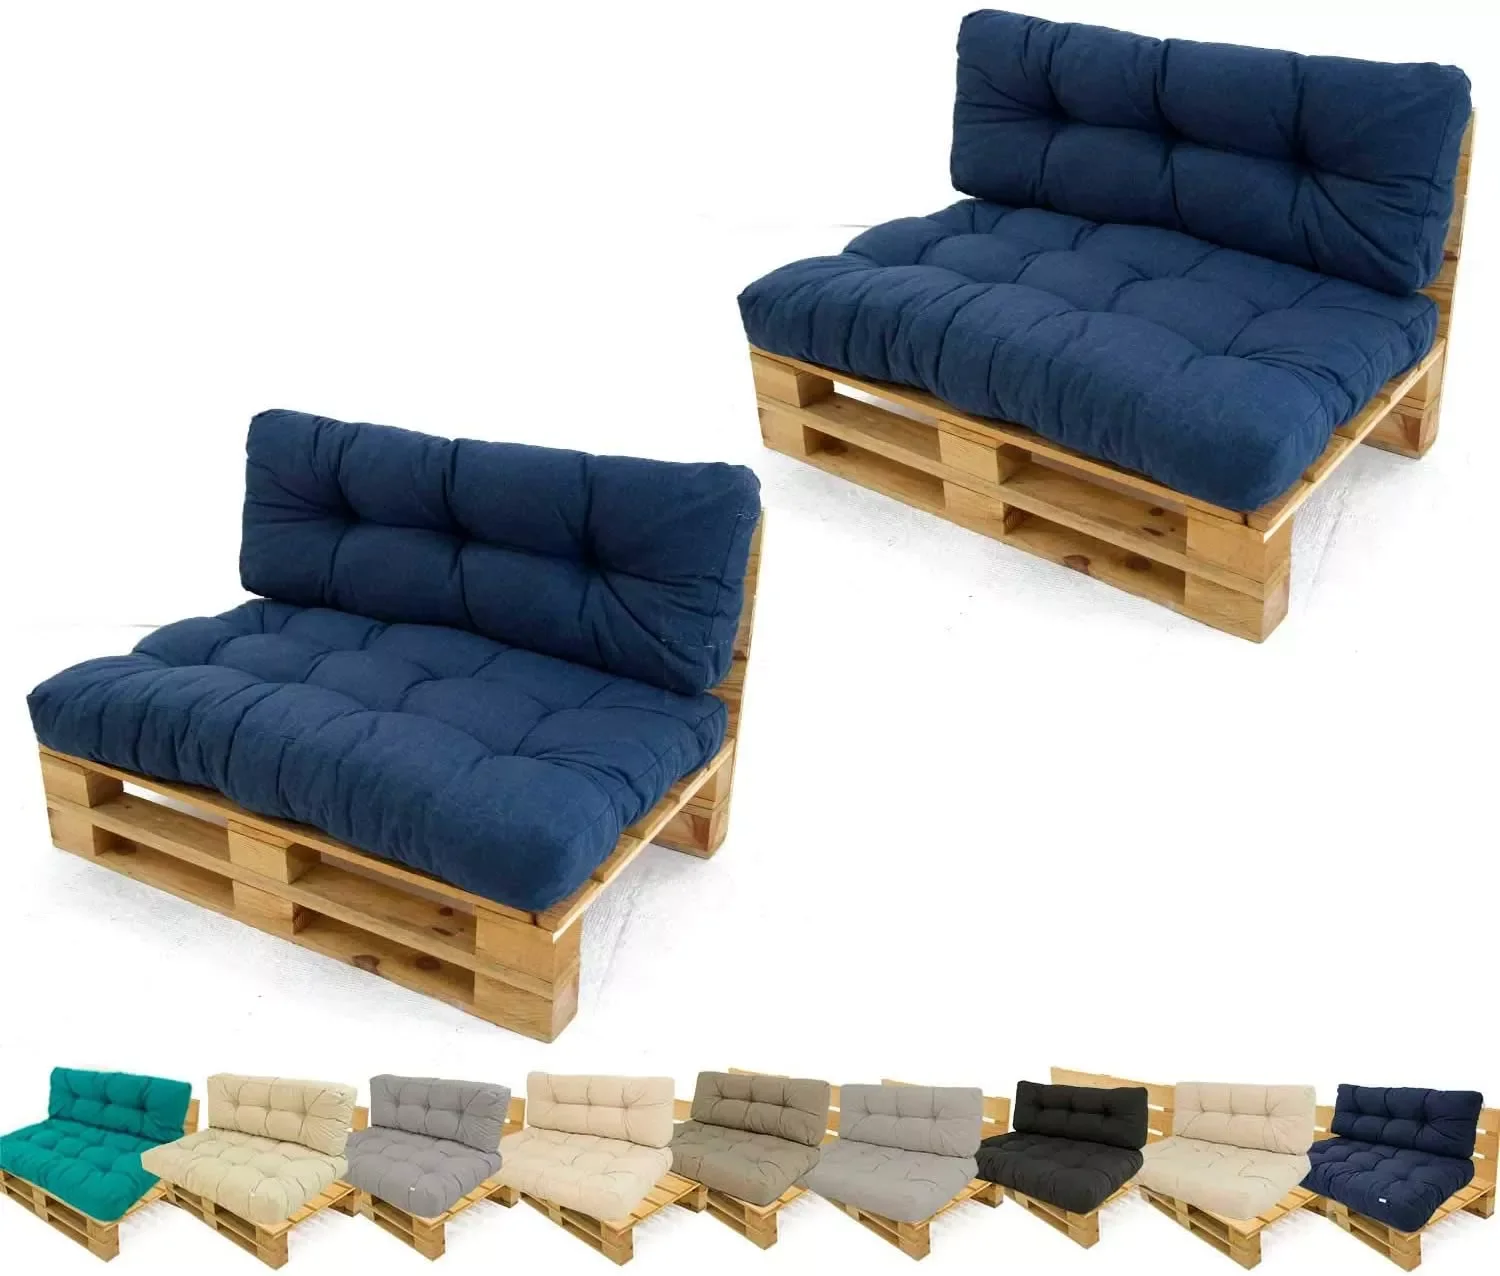 

Комплект из 2 диванов-поддонов + 2 диванов + 2 задних диванов, диванов и уличных сидений, уличные кресла, садовые диваны, садовая мебель, ou